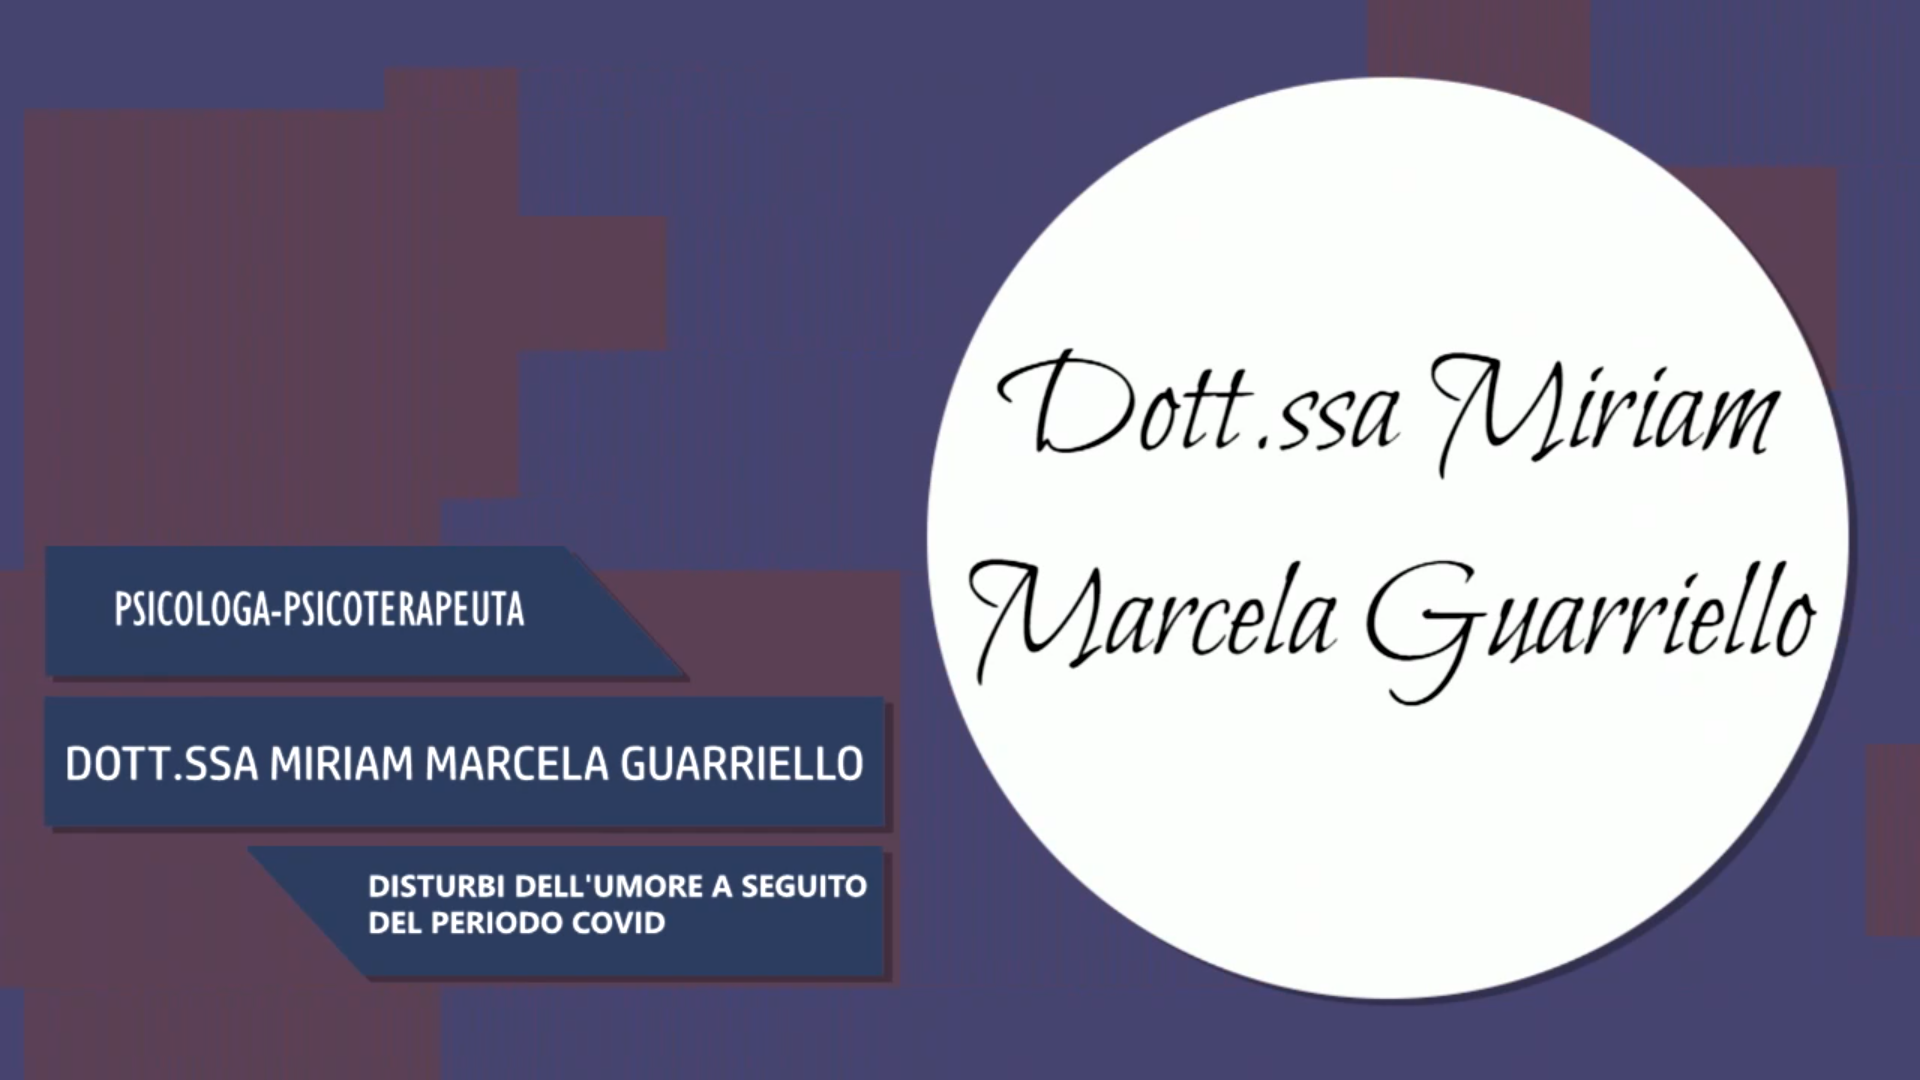 Intervista alla Dott.ssa Miriam Marcela Guarriello – Disturbi dell’umore a seguito del periodo covid